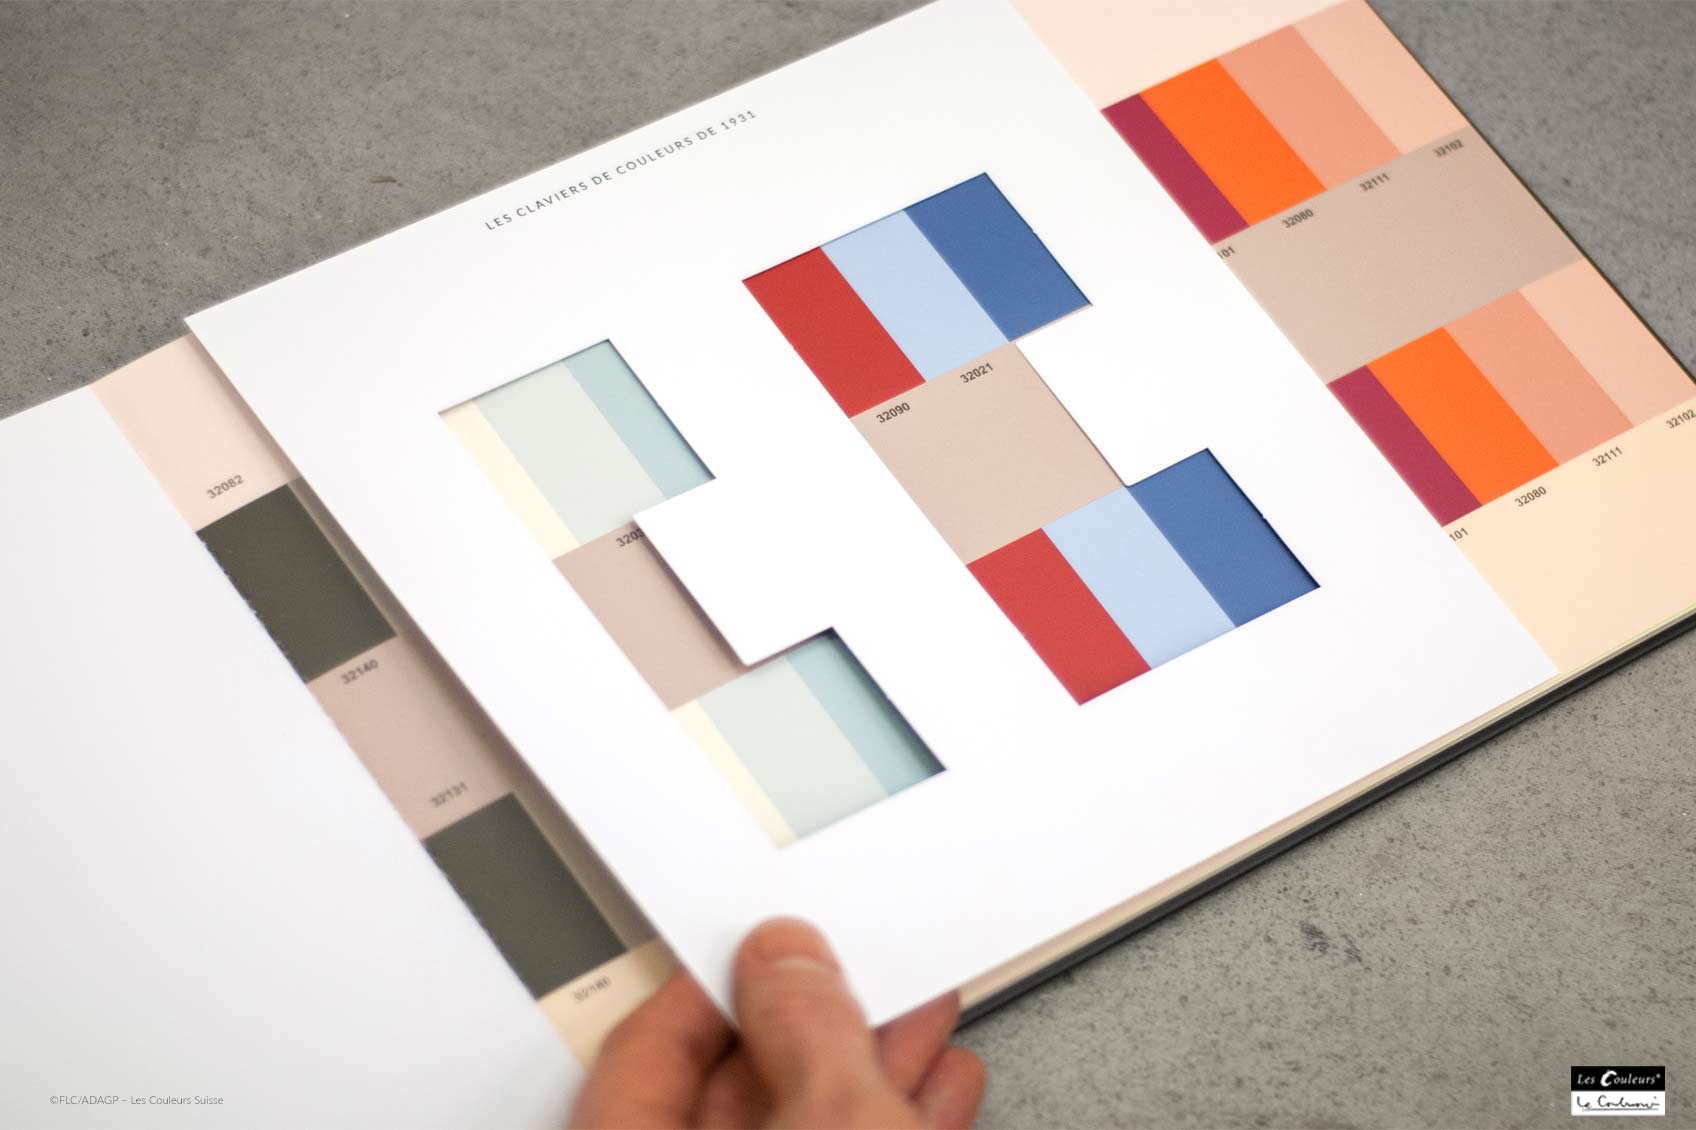 Le Corbusier colour keyboard design ©FLC/ADAGP – Les Couleurs Suisse